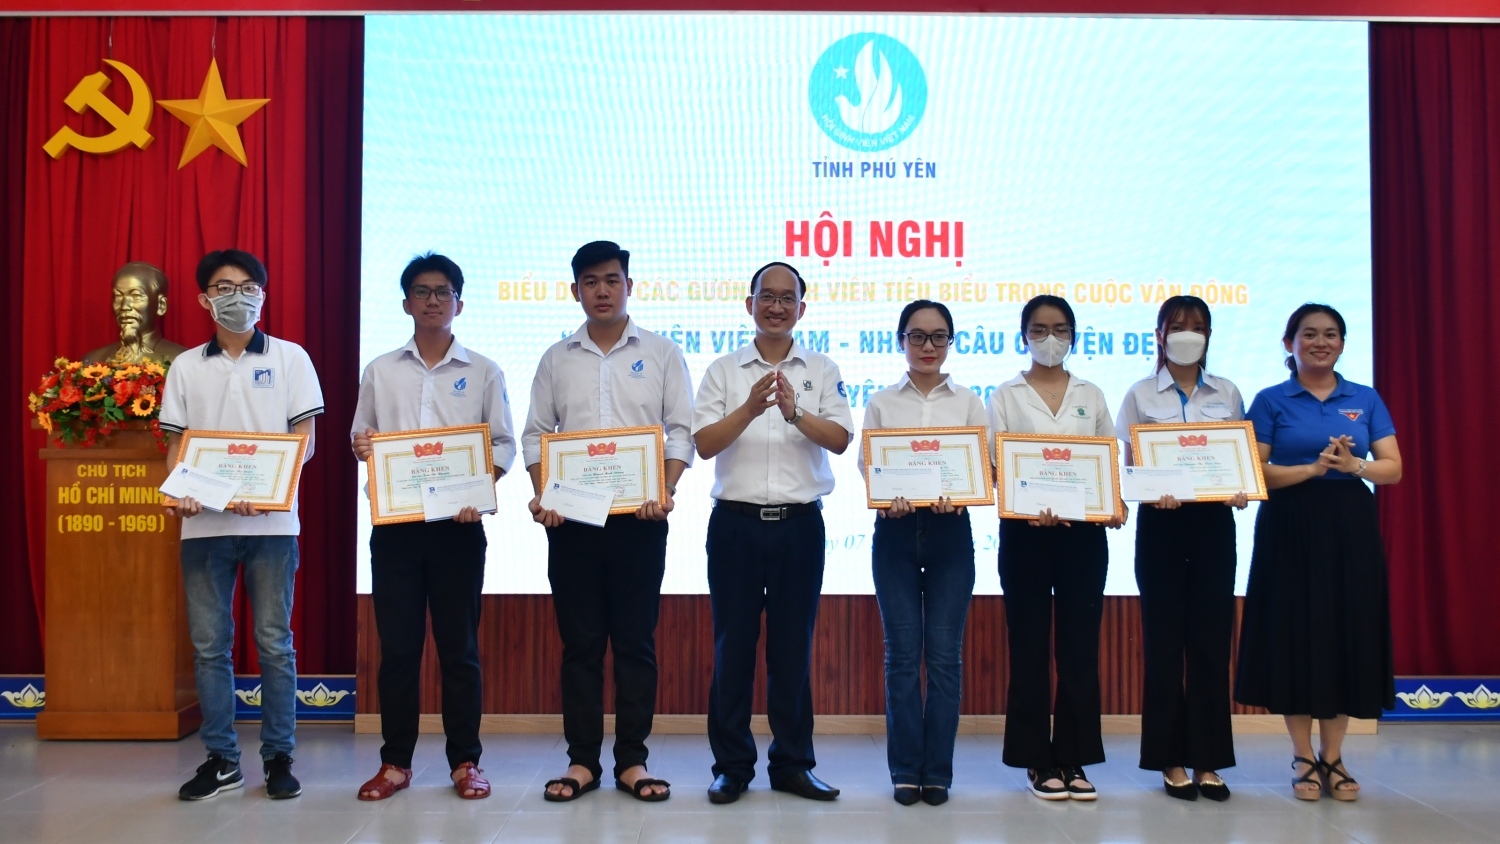 Hội Sinh viên tỉnh Phú Yên tặng bằng khen cho 06 sinh viên tiêu biểu trong cuộc vận động “Sinh viên Việt Nam - Những câu chuyện đẹp” năm 2022.